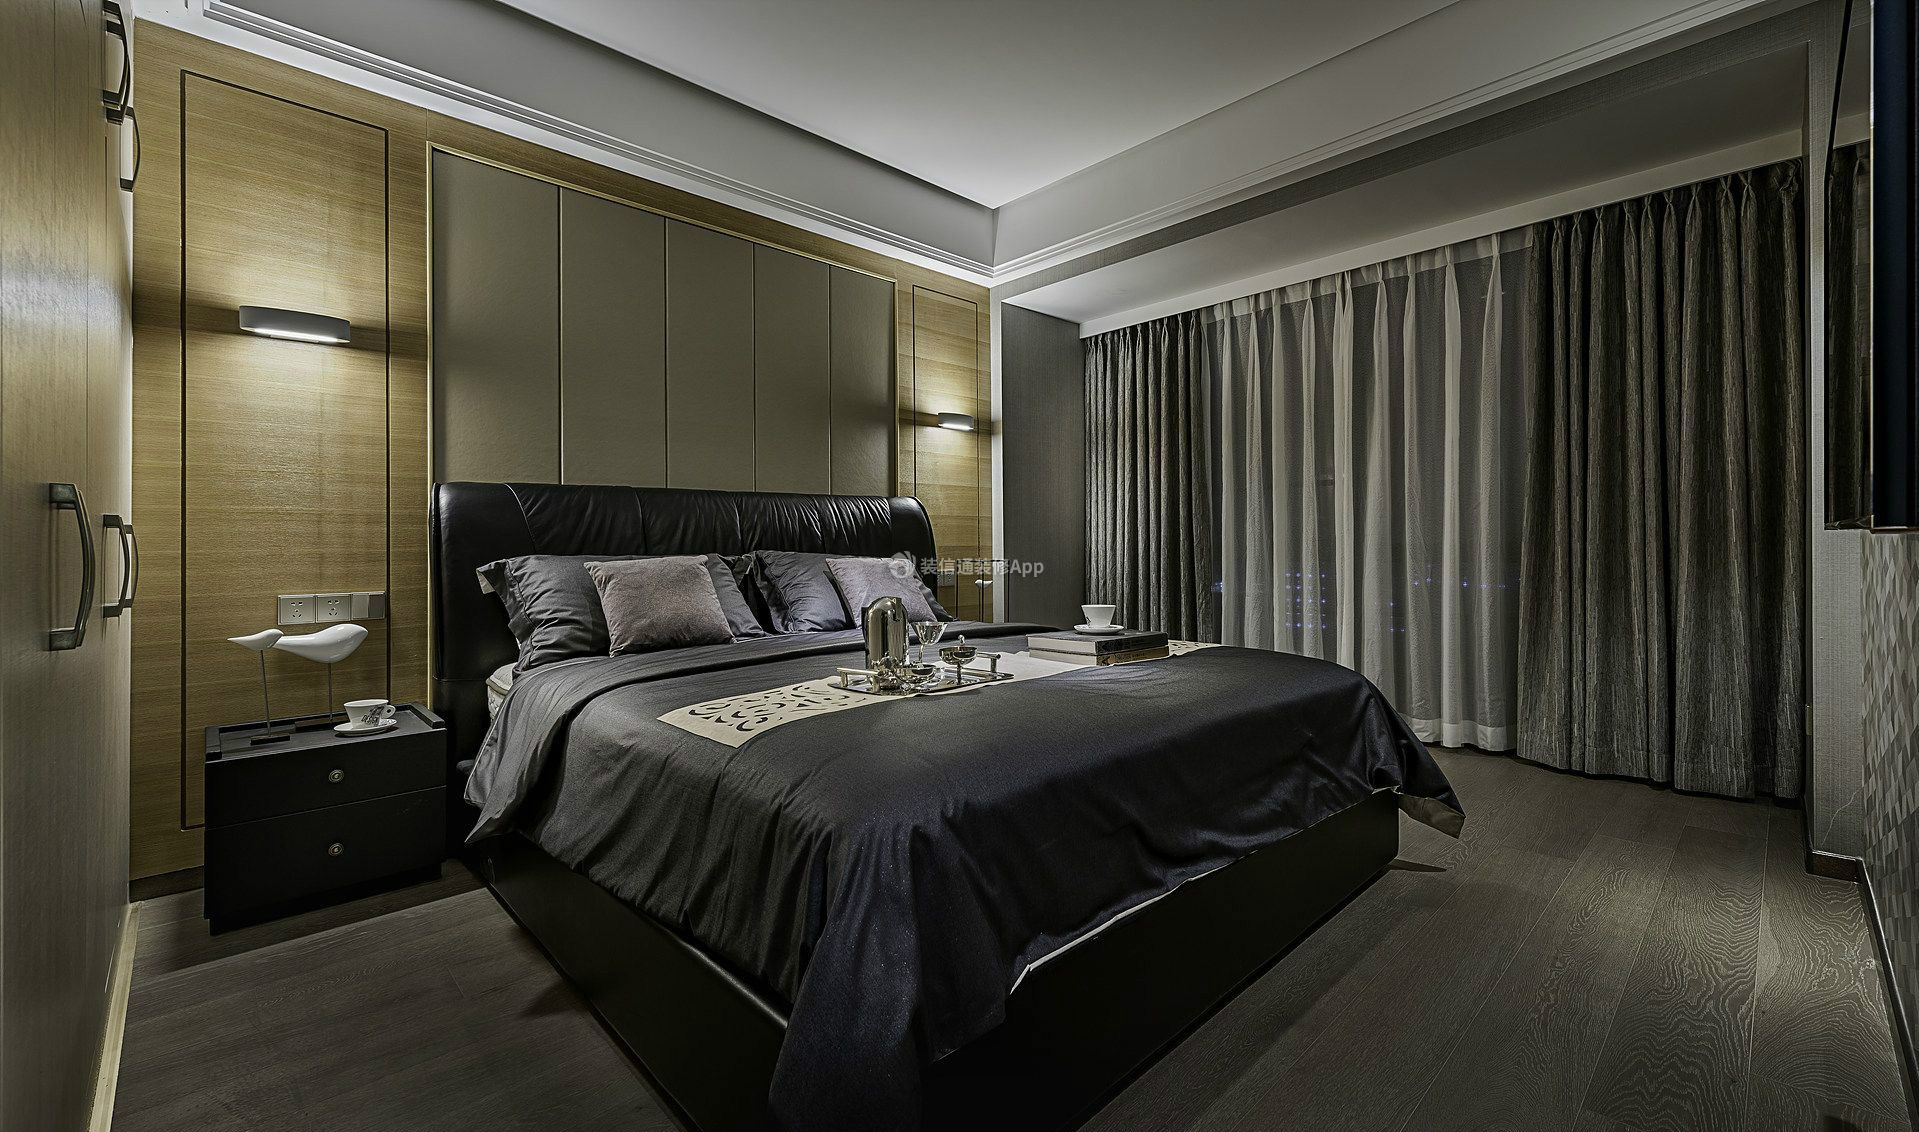 149平米房子卧室床头壁灯装修设计实景图